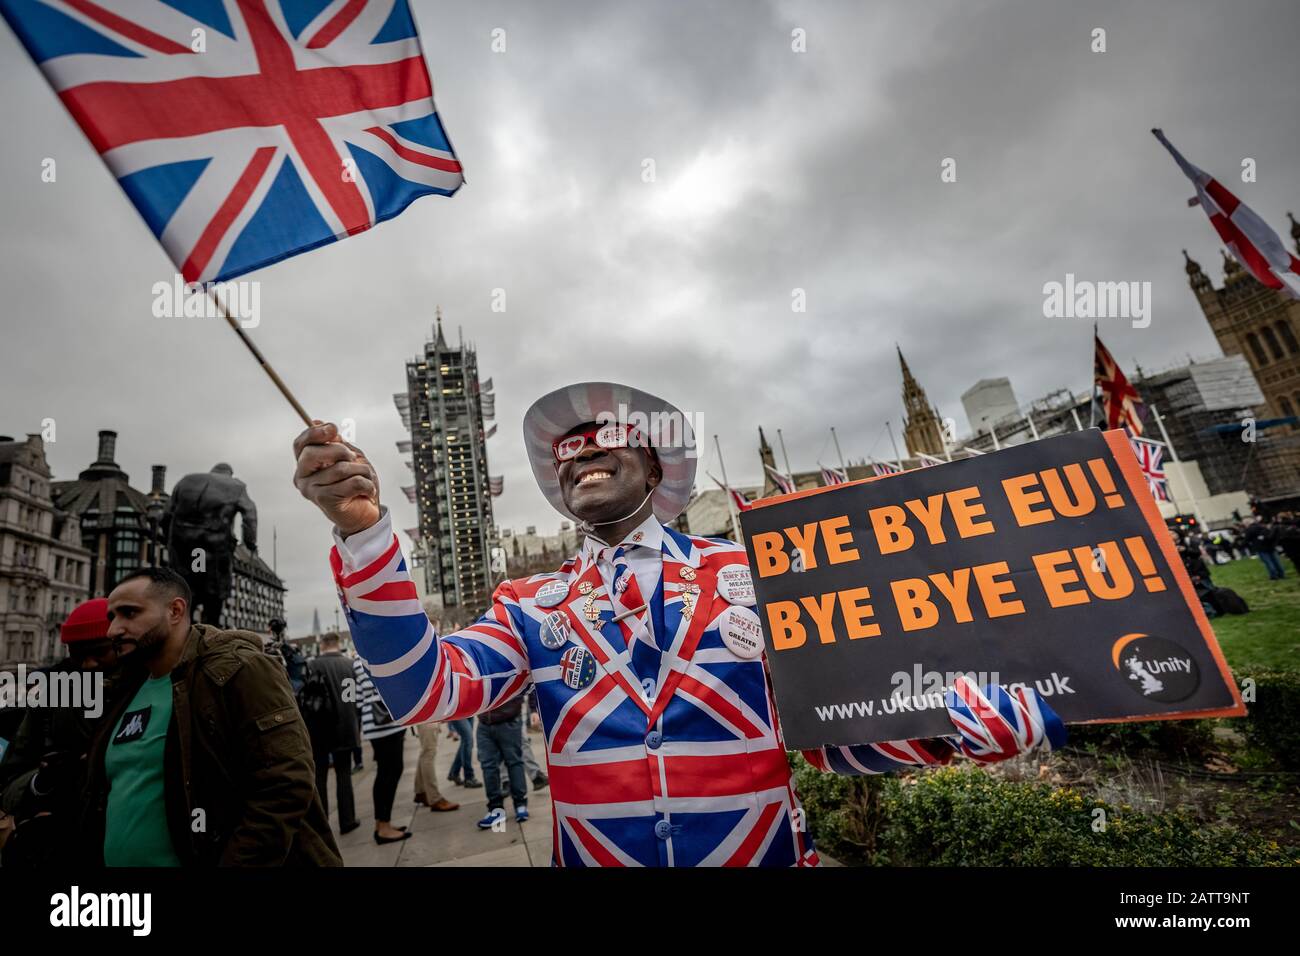 Le 31 janvier 2020, jour du Brexit au Royaume-Uni. Les célébrations à Londres, alors que le Royaume-Uni quitte enfin l'Union européenne après une relation de 47 ans. Banque D'Images